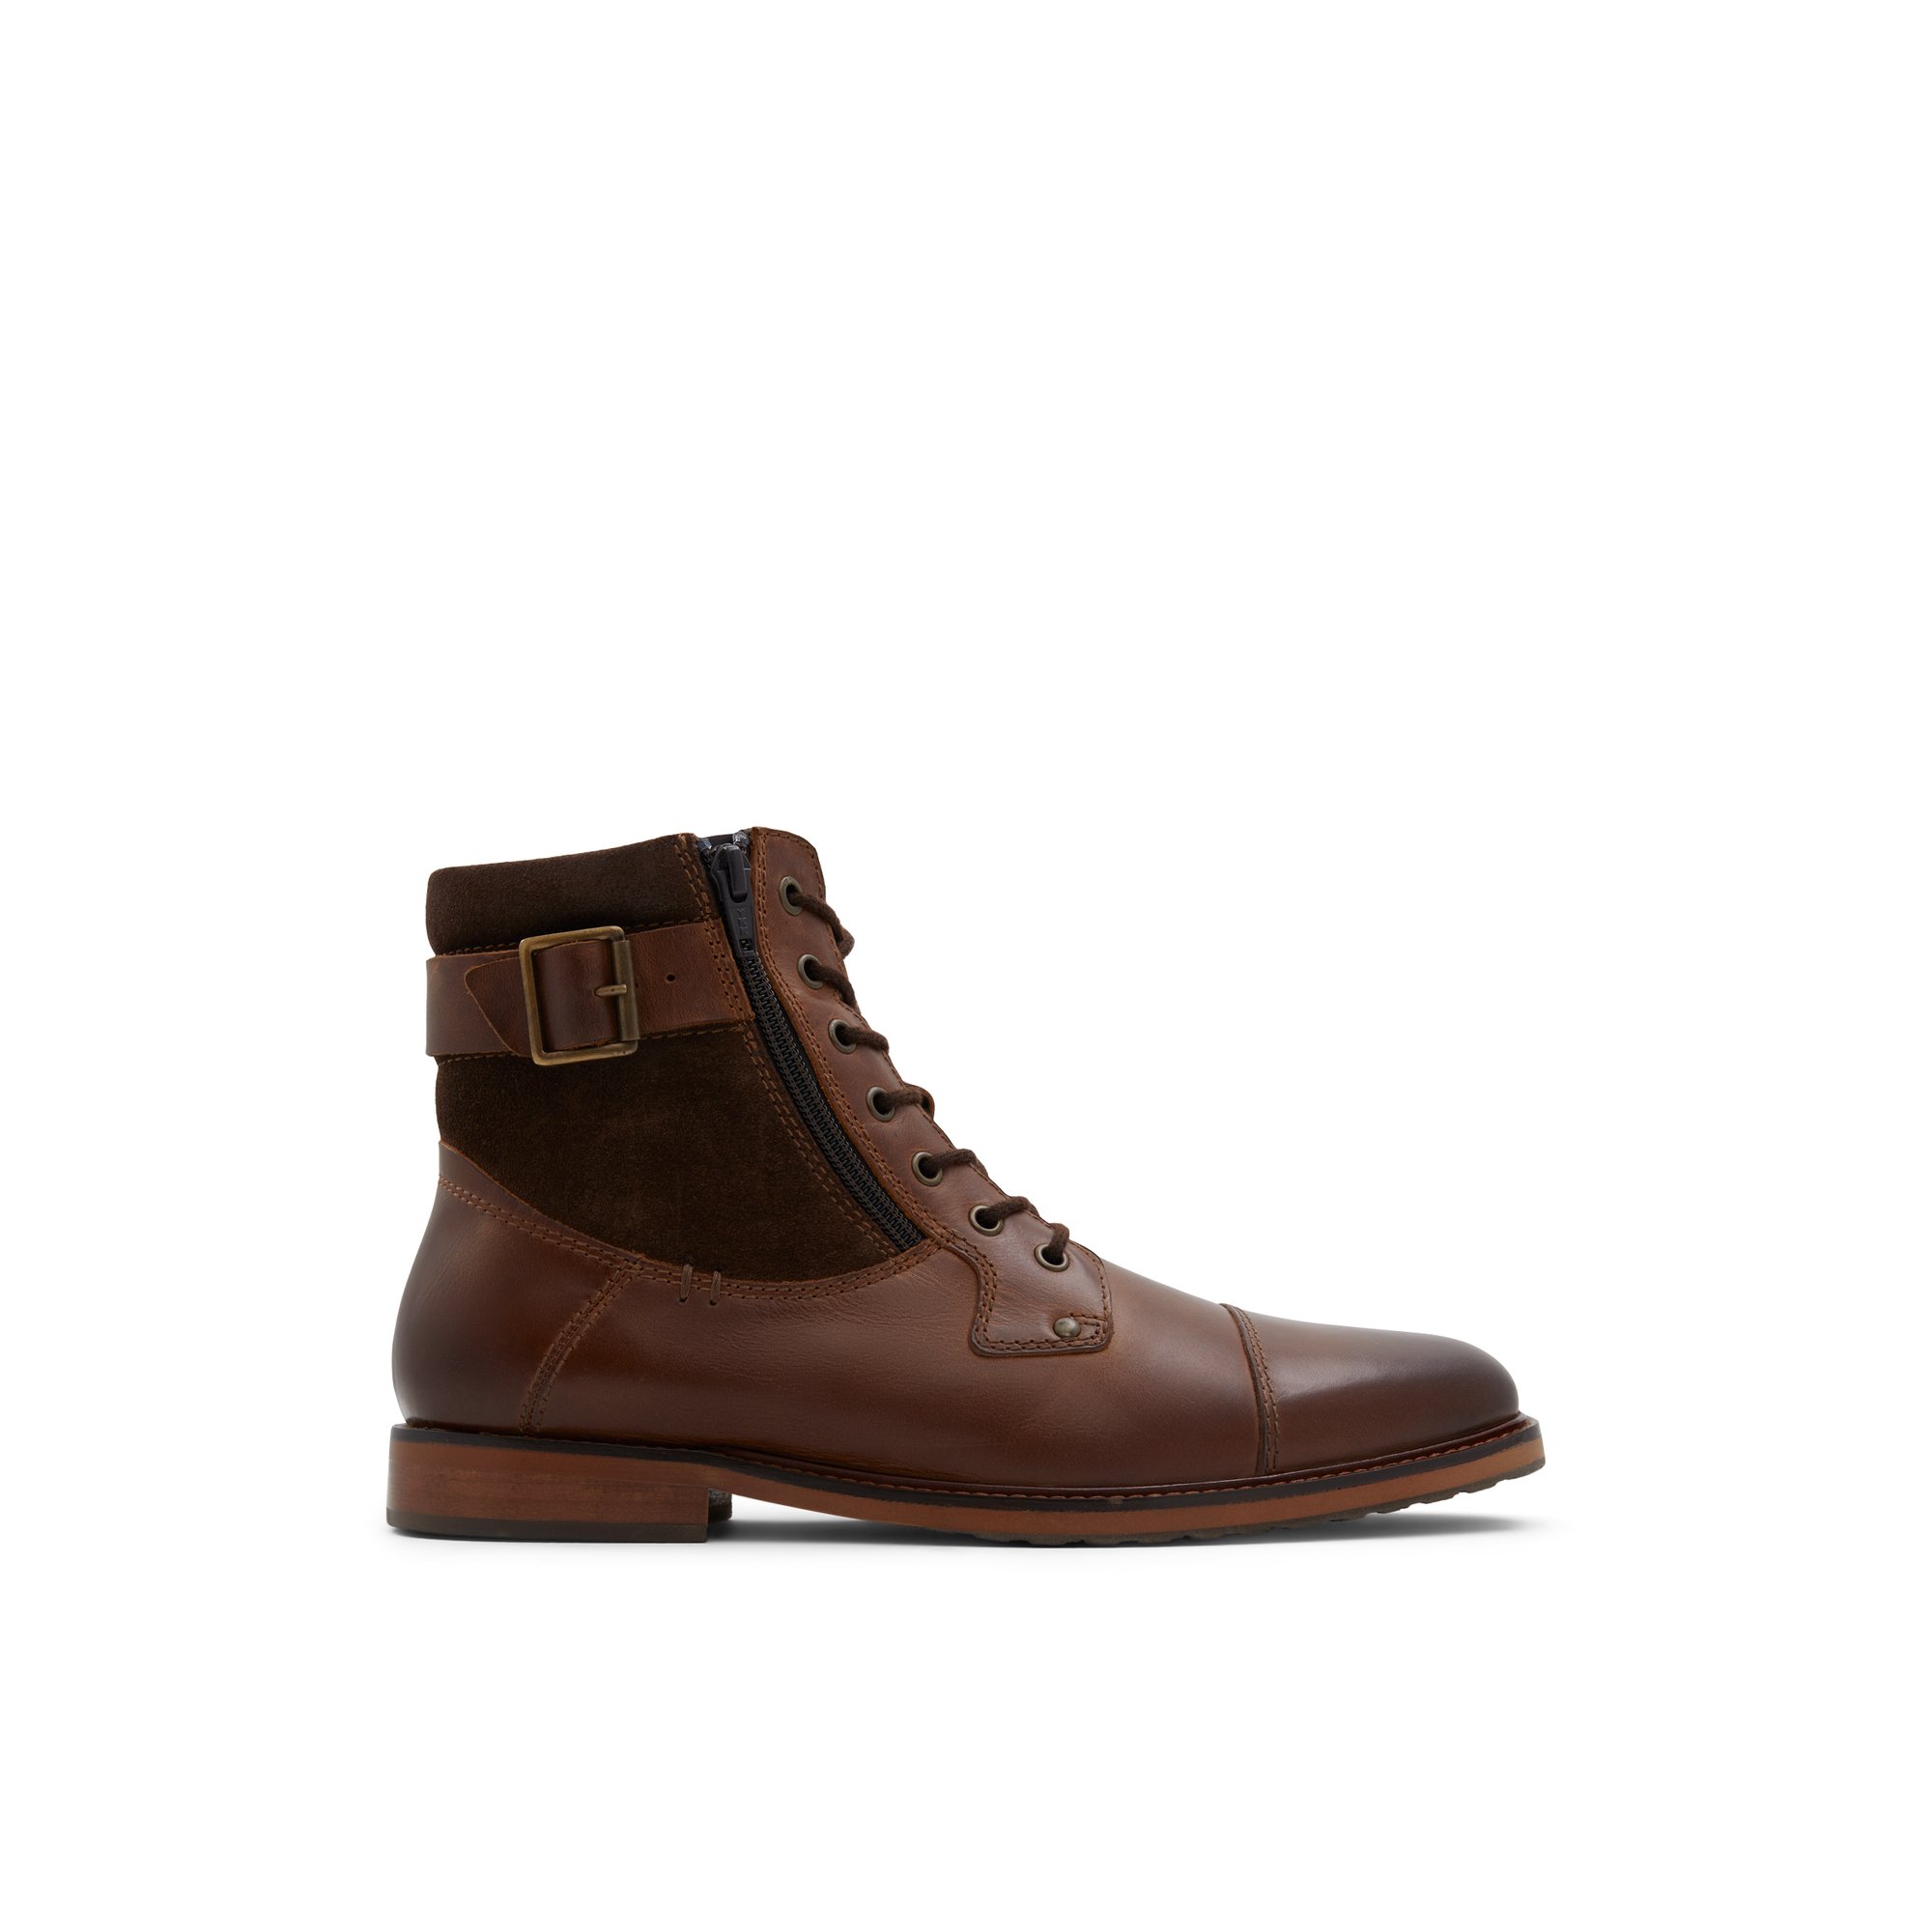 ALDO Constantine - Men's Boots Lace-up - Brown